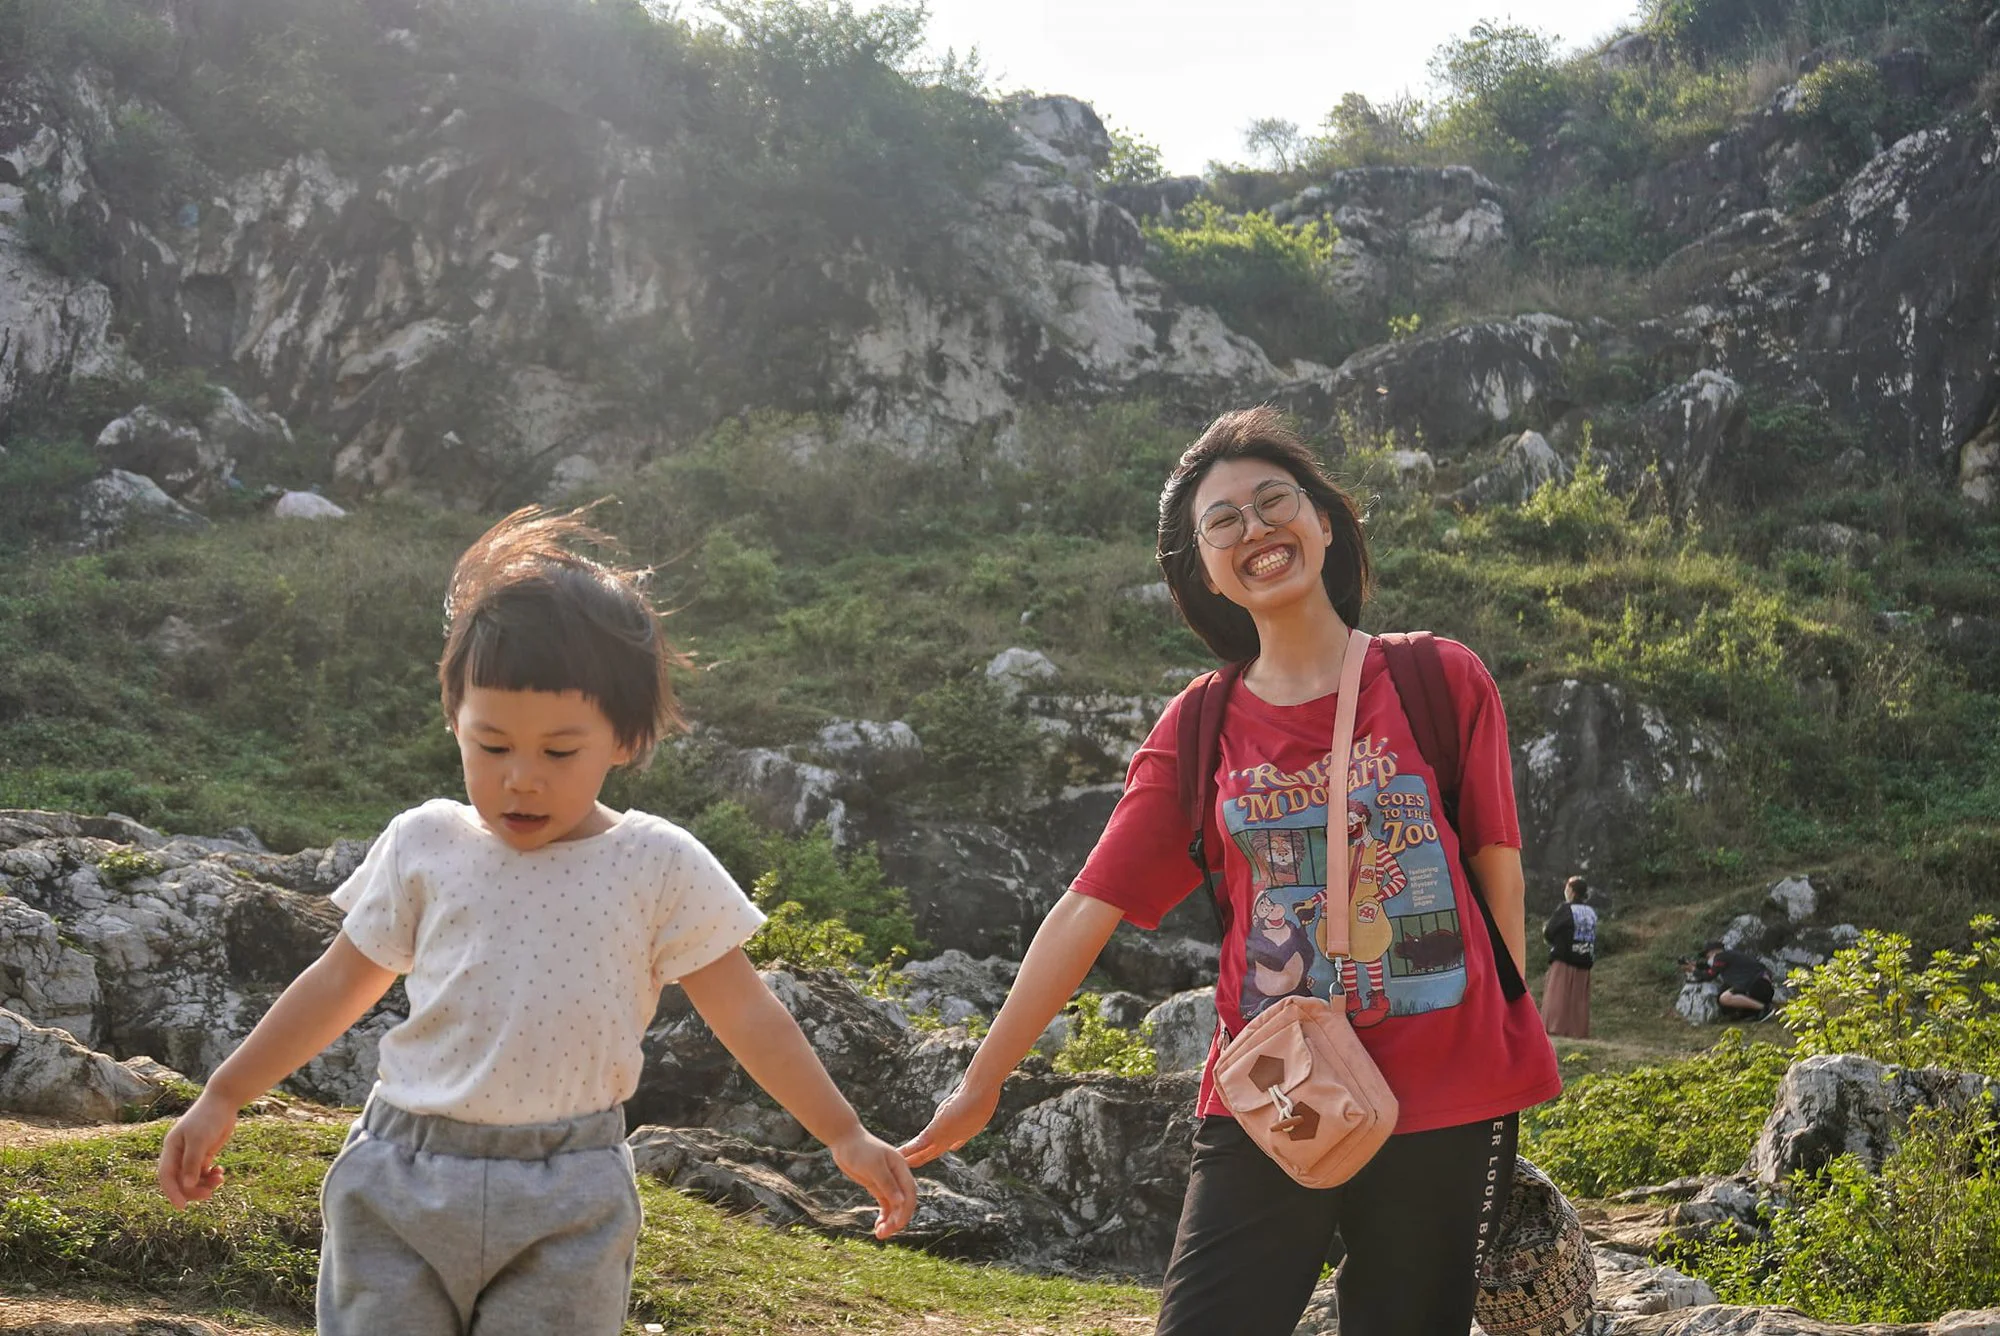 Chuyến leo núi đầy niềm vui và thử thách của gia đình nhỏ cùng 6 quy tắc cần nhớ để giữ an toàn cho con  - Ảnh 6.